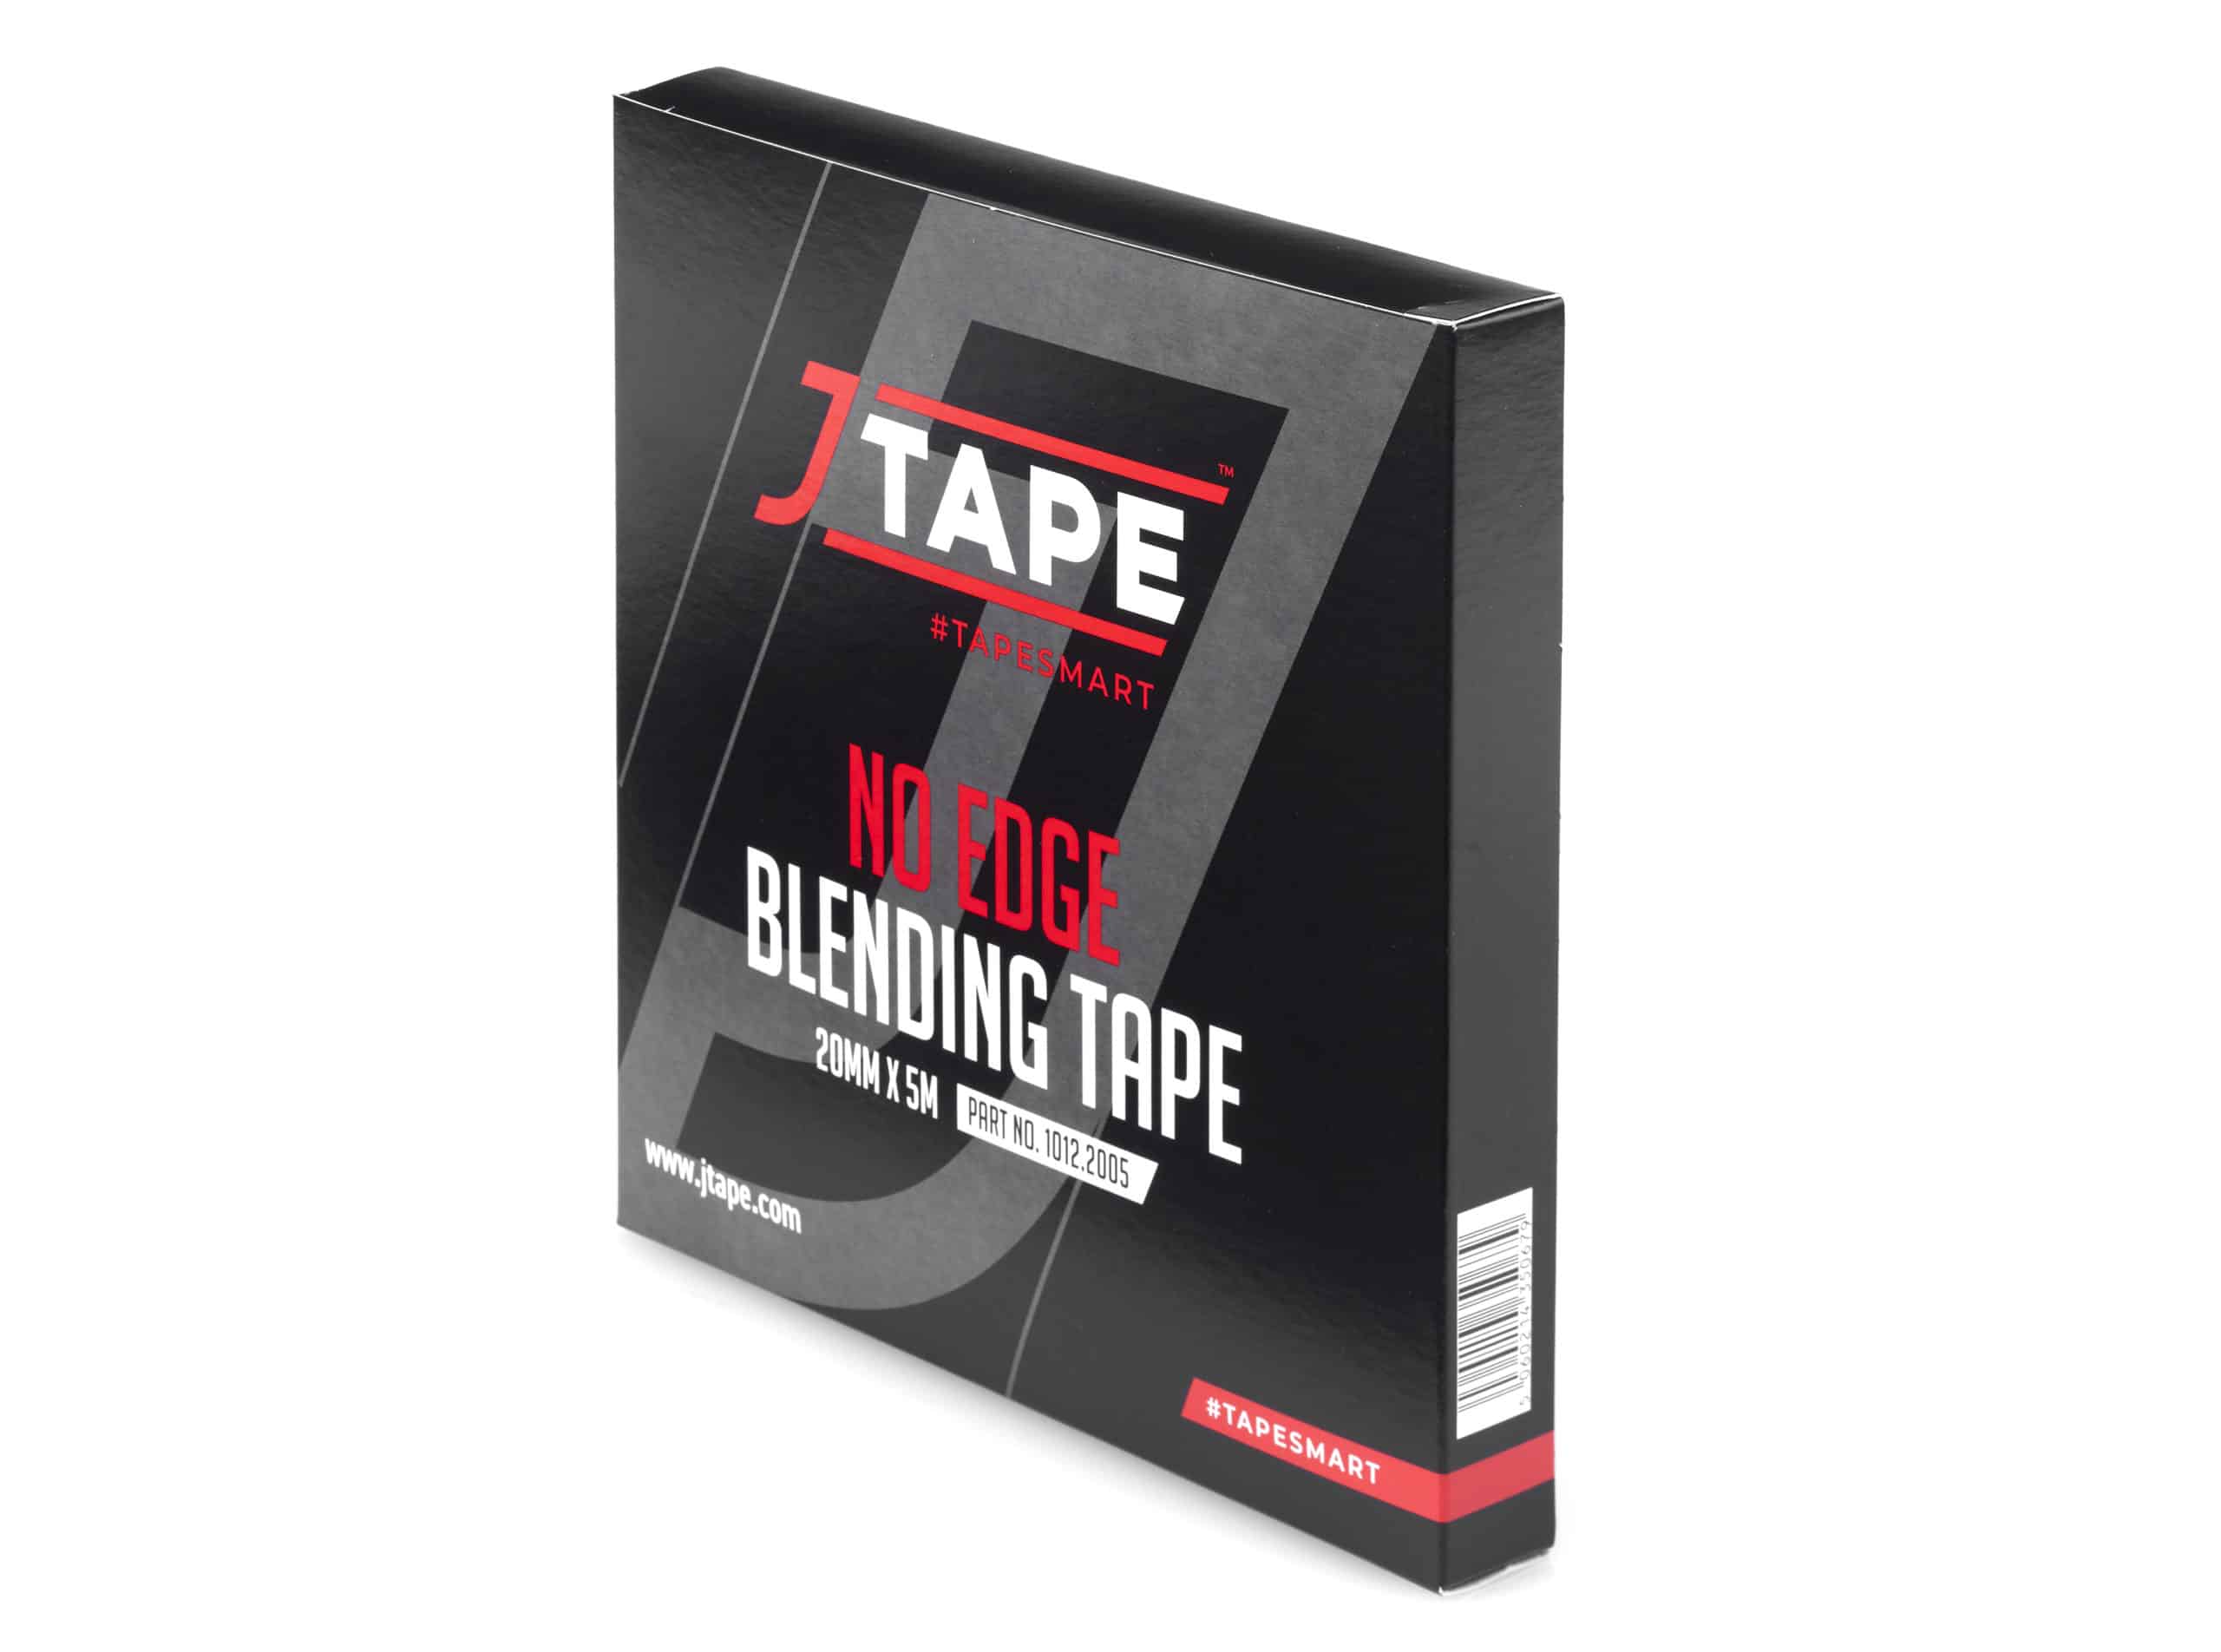 JTAPE no edge blending tape